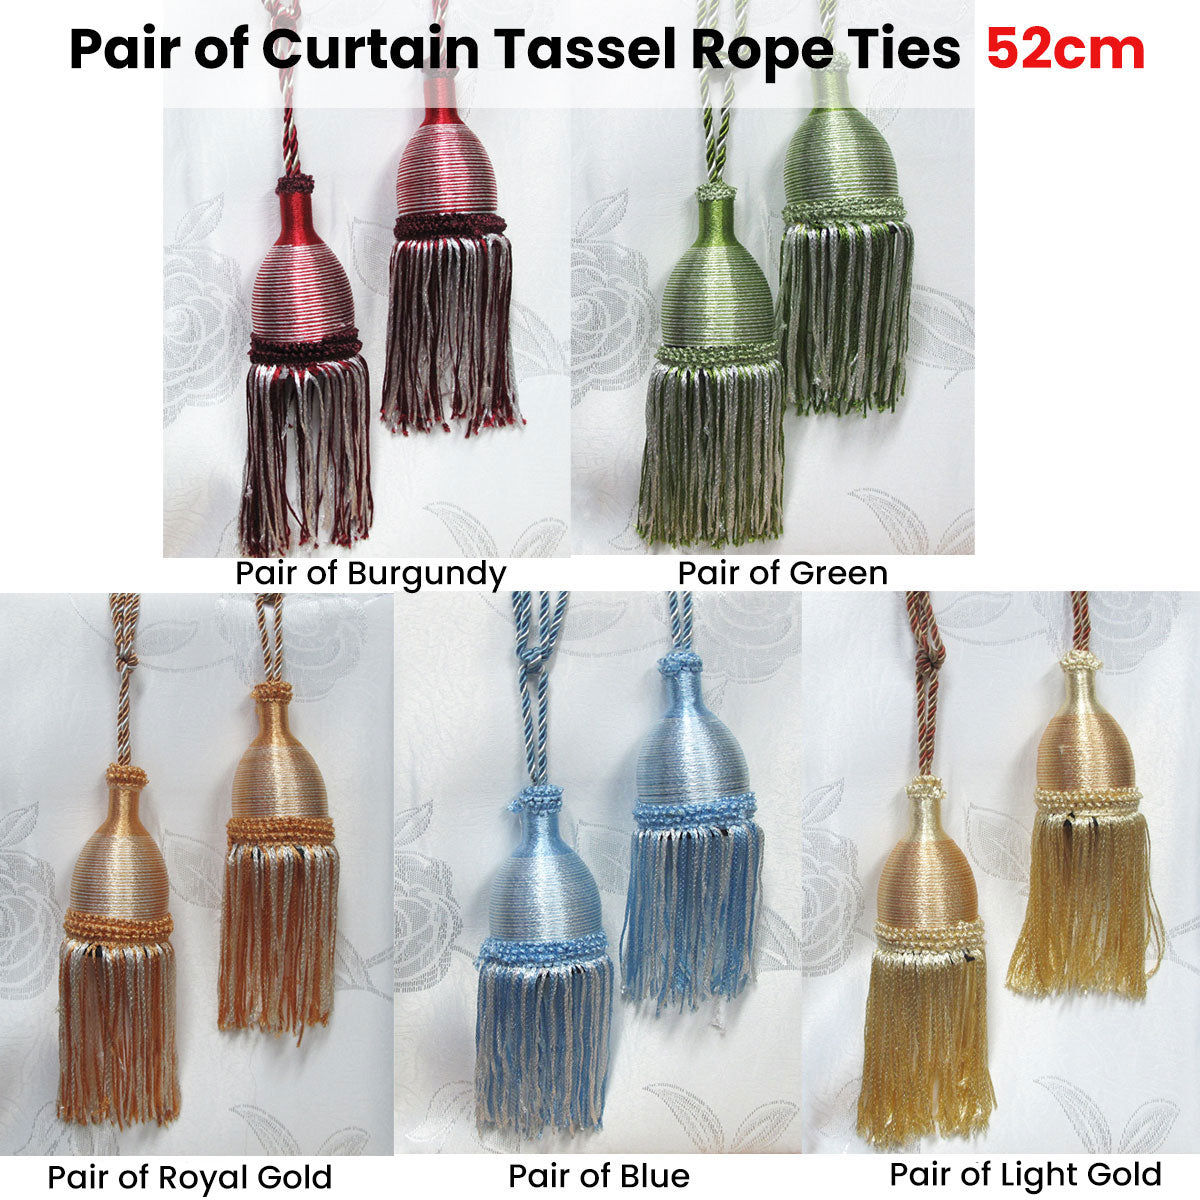 Pair of Curtain Tassel Rope Ties 52cm Blue - SILBERSHELL